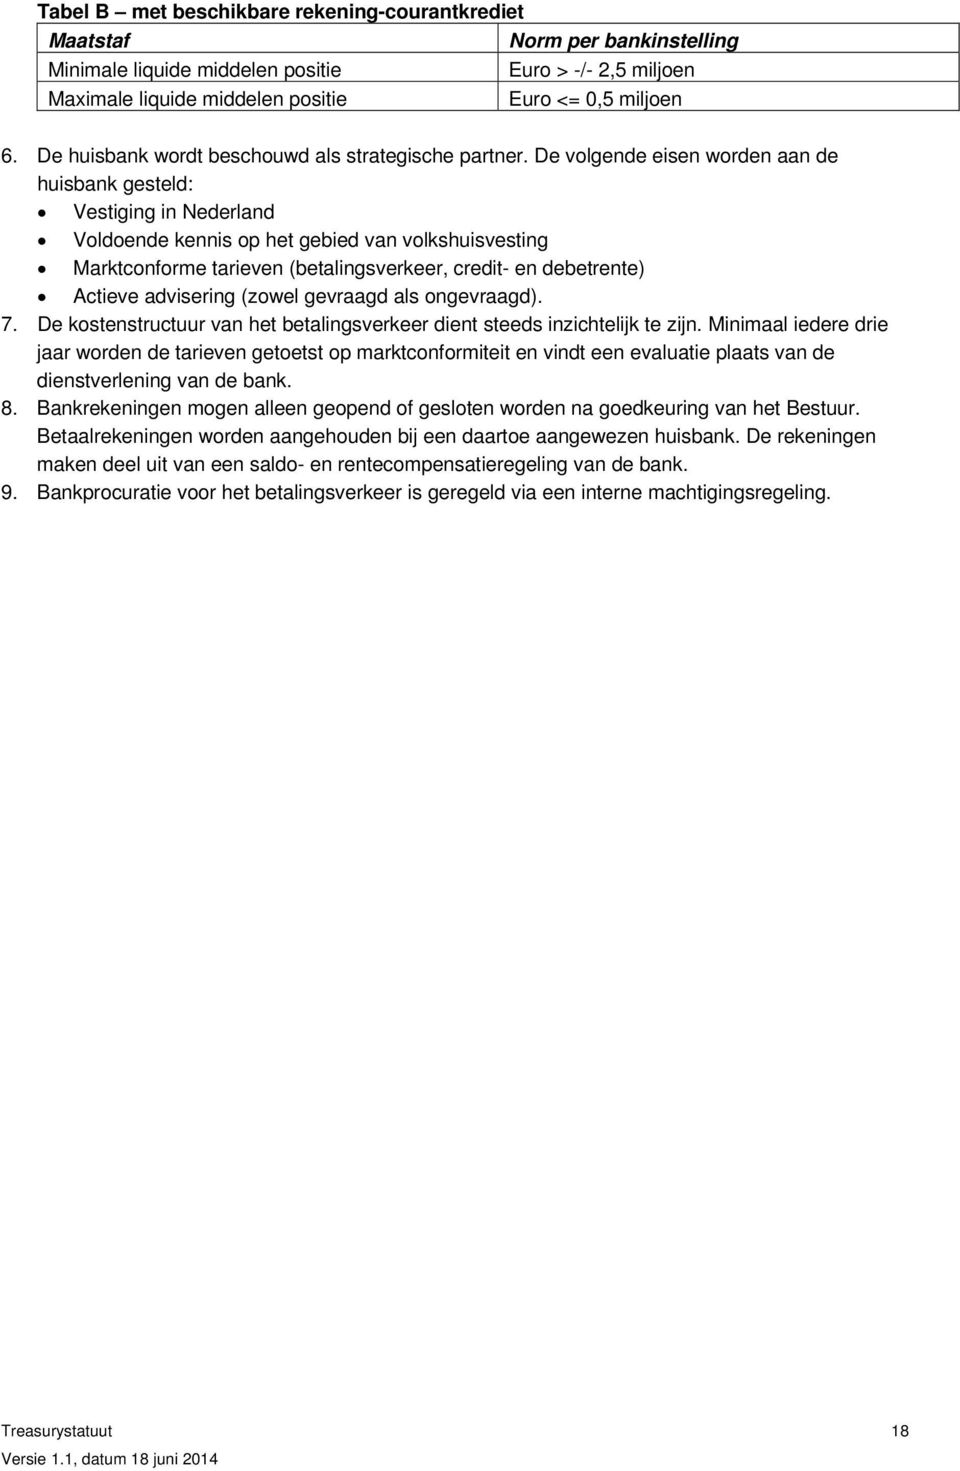 De volgende eisen worden aan de huisbank gesteld: Vestiging in Nederland Voldoende kennis op het gebied van volkshuisvesting Marktconforme tarieven (betalingsverkeer, credit- en debetrente) Actieve